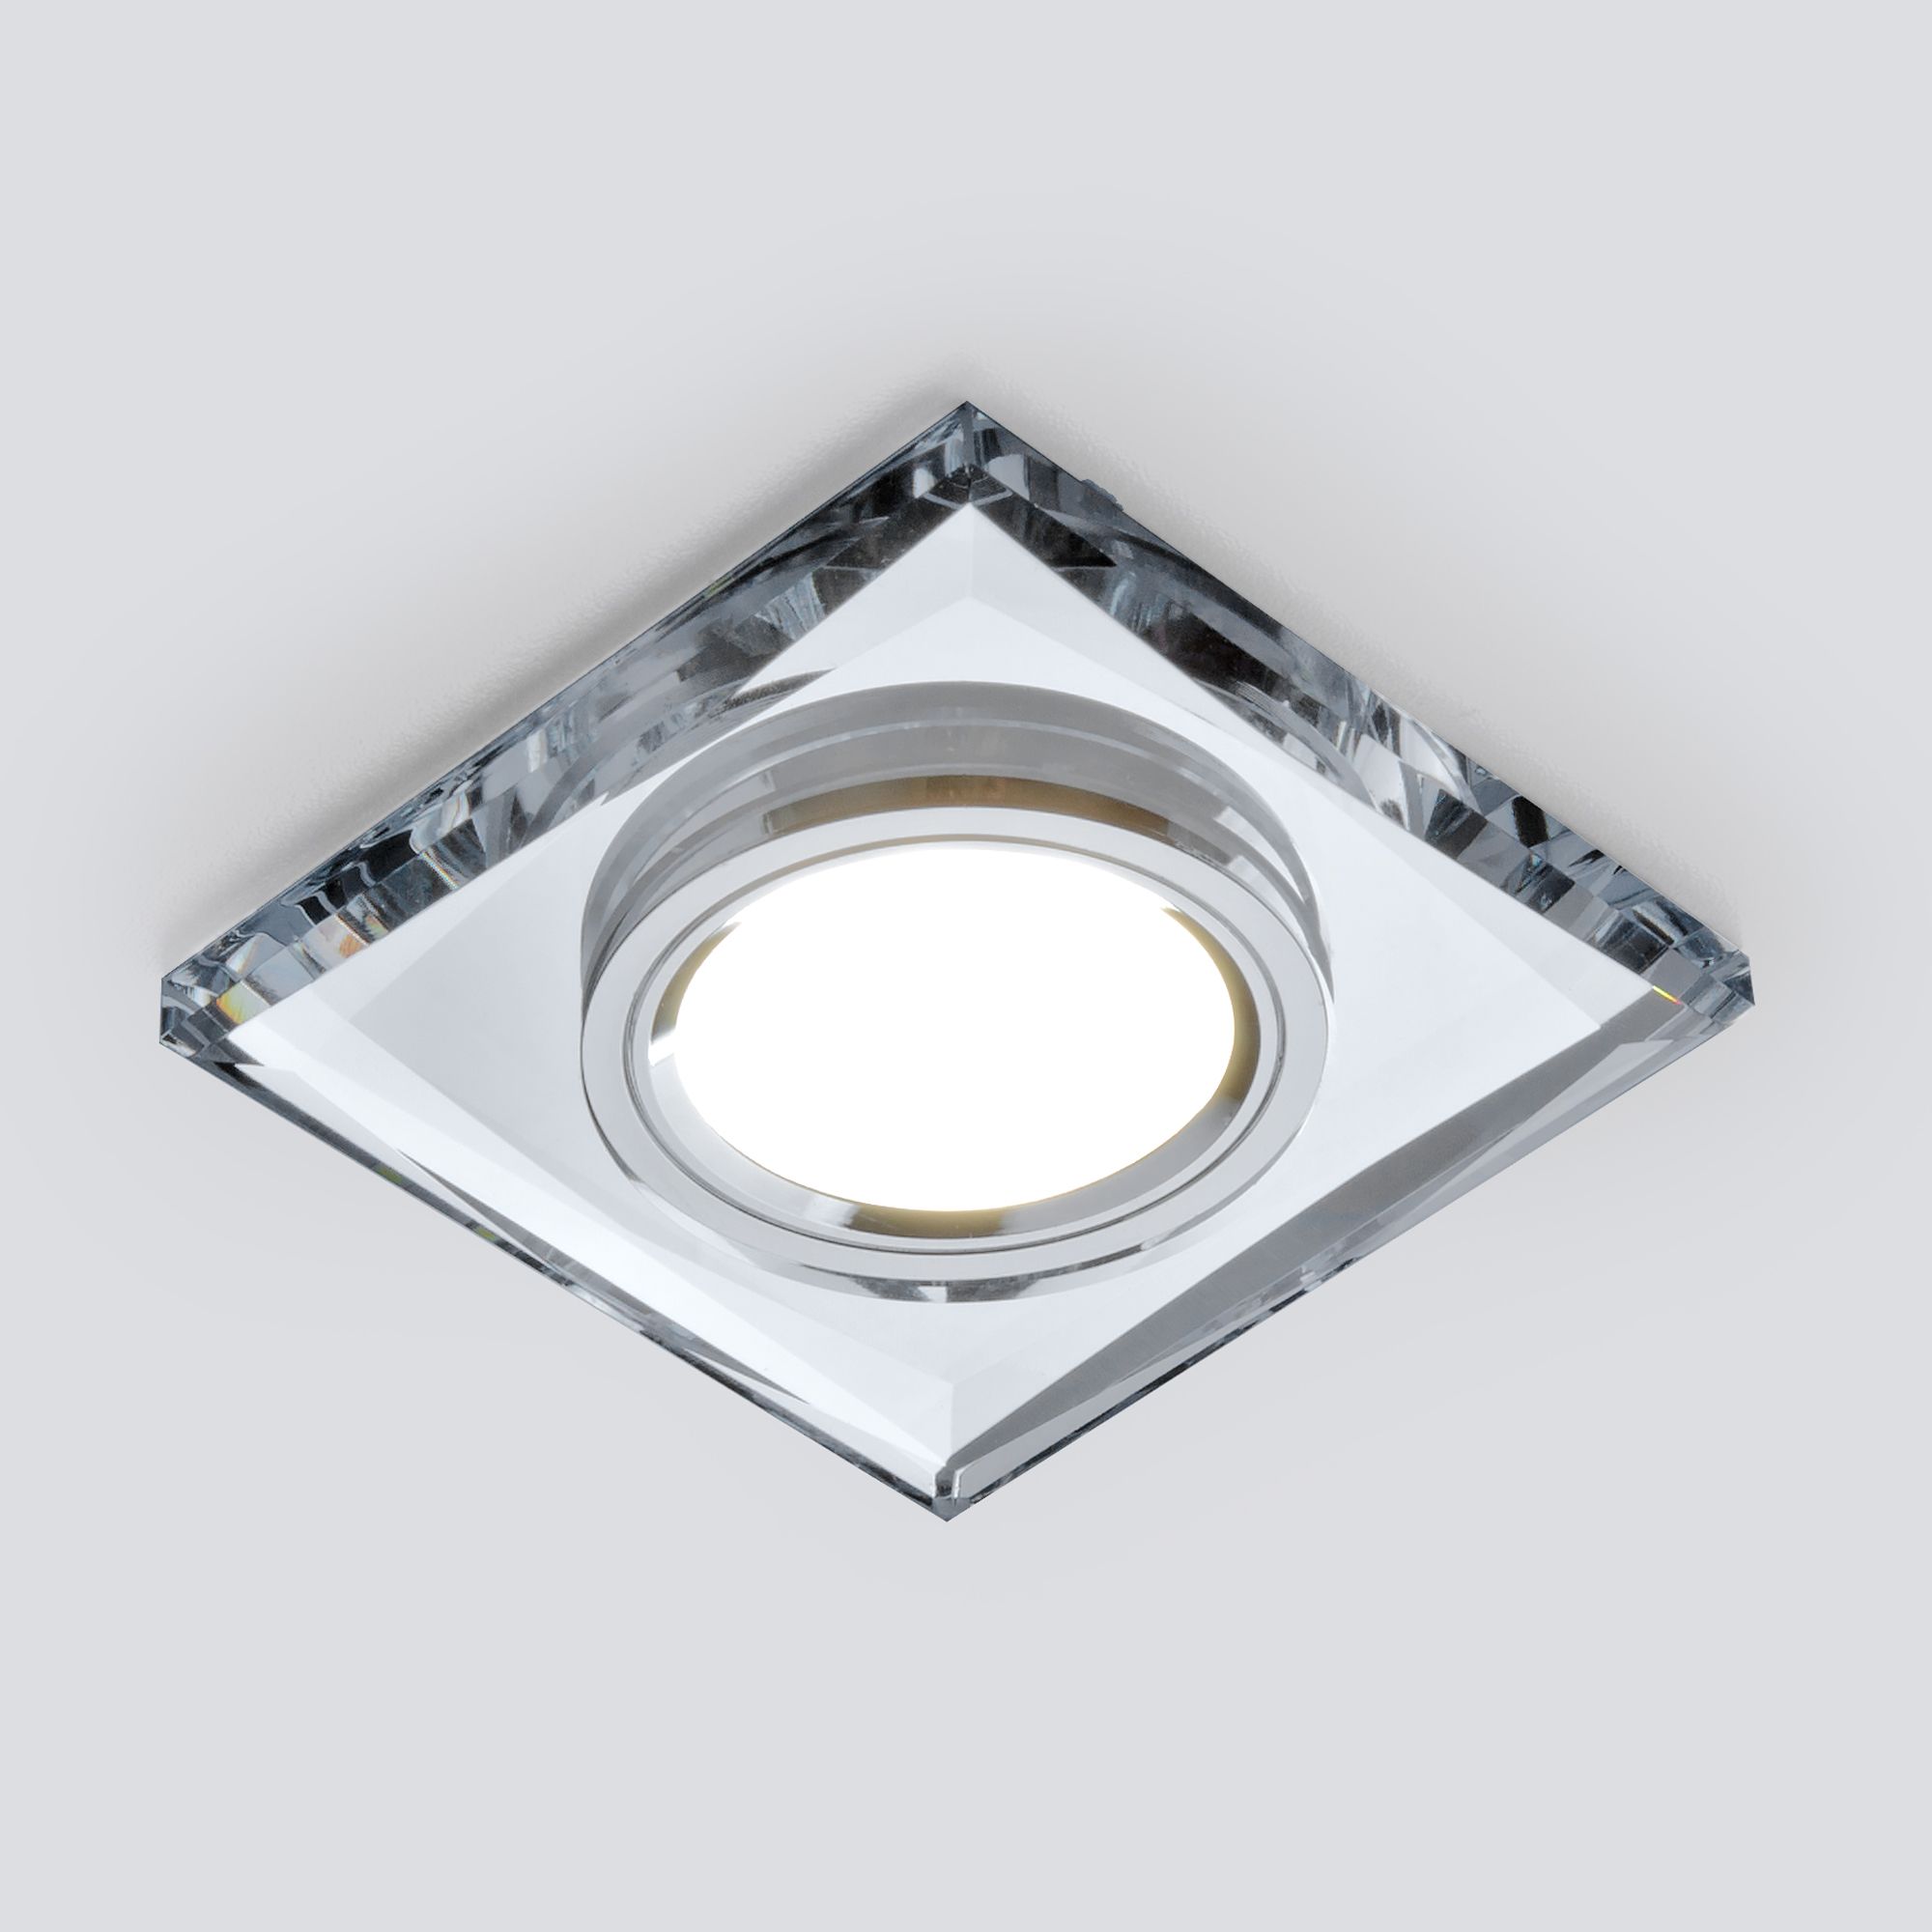 Встраиваемый точечный светильник со светодиодной подсветкой 2230 MR16 SL зеркальный/серебро